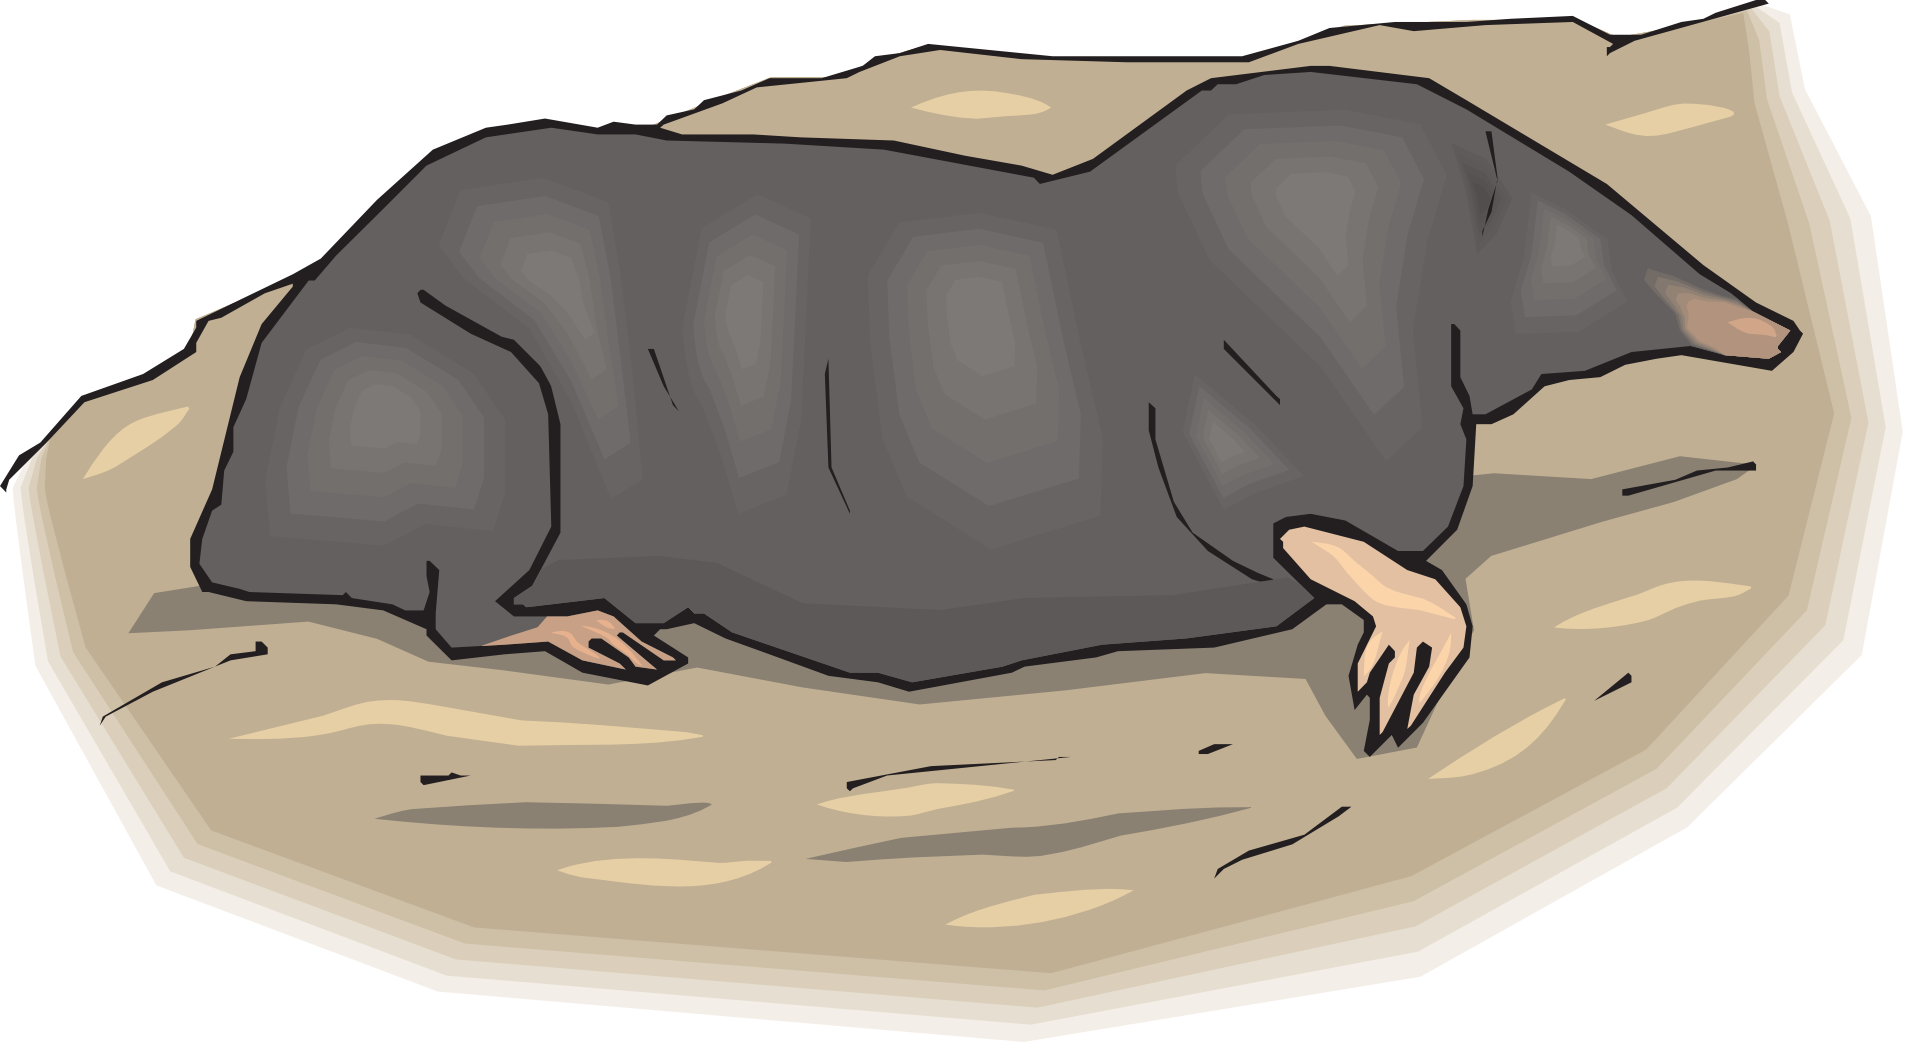 Ground moles